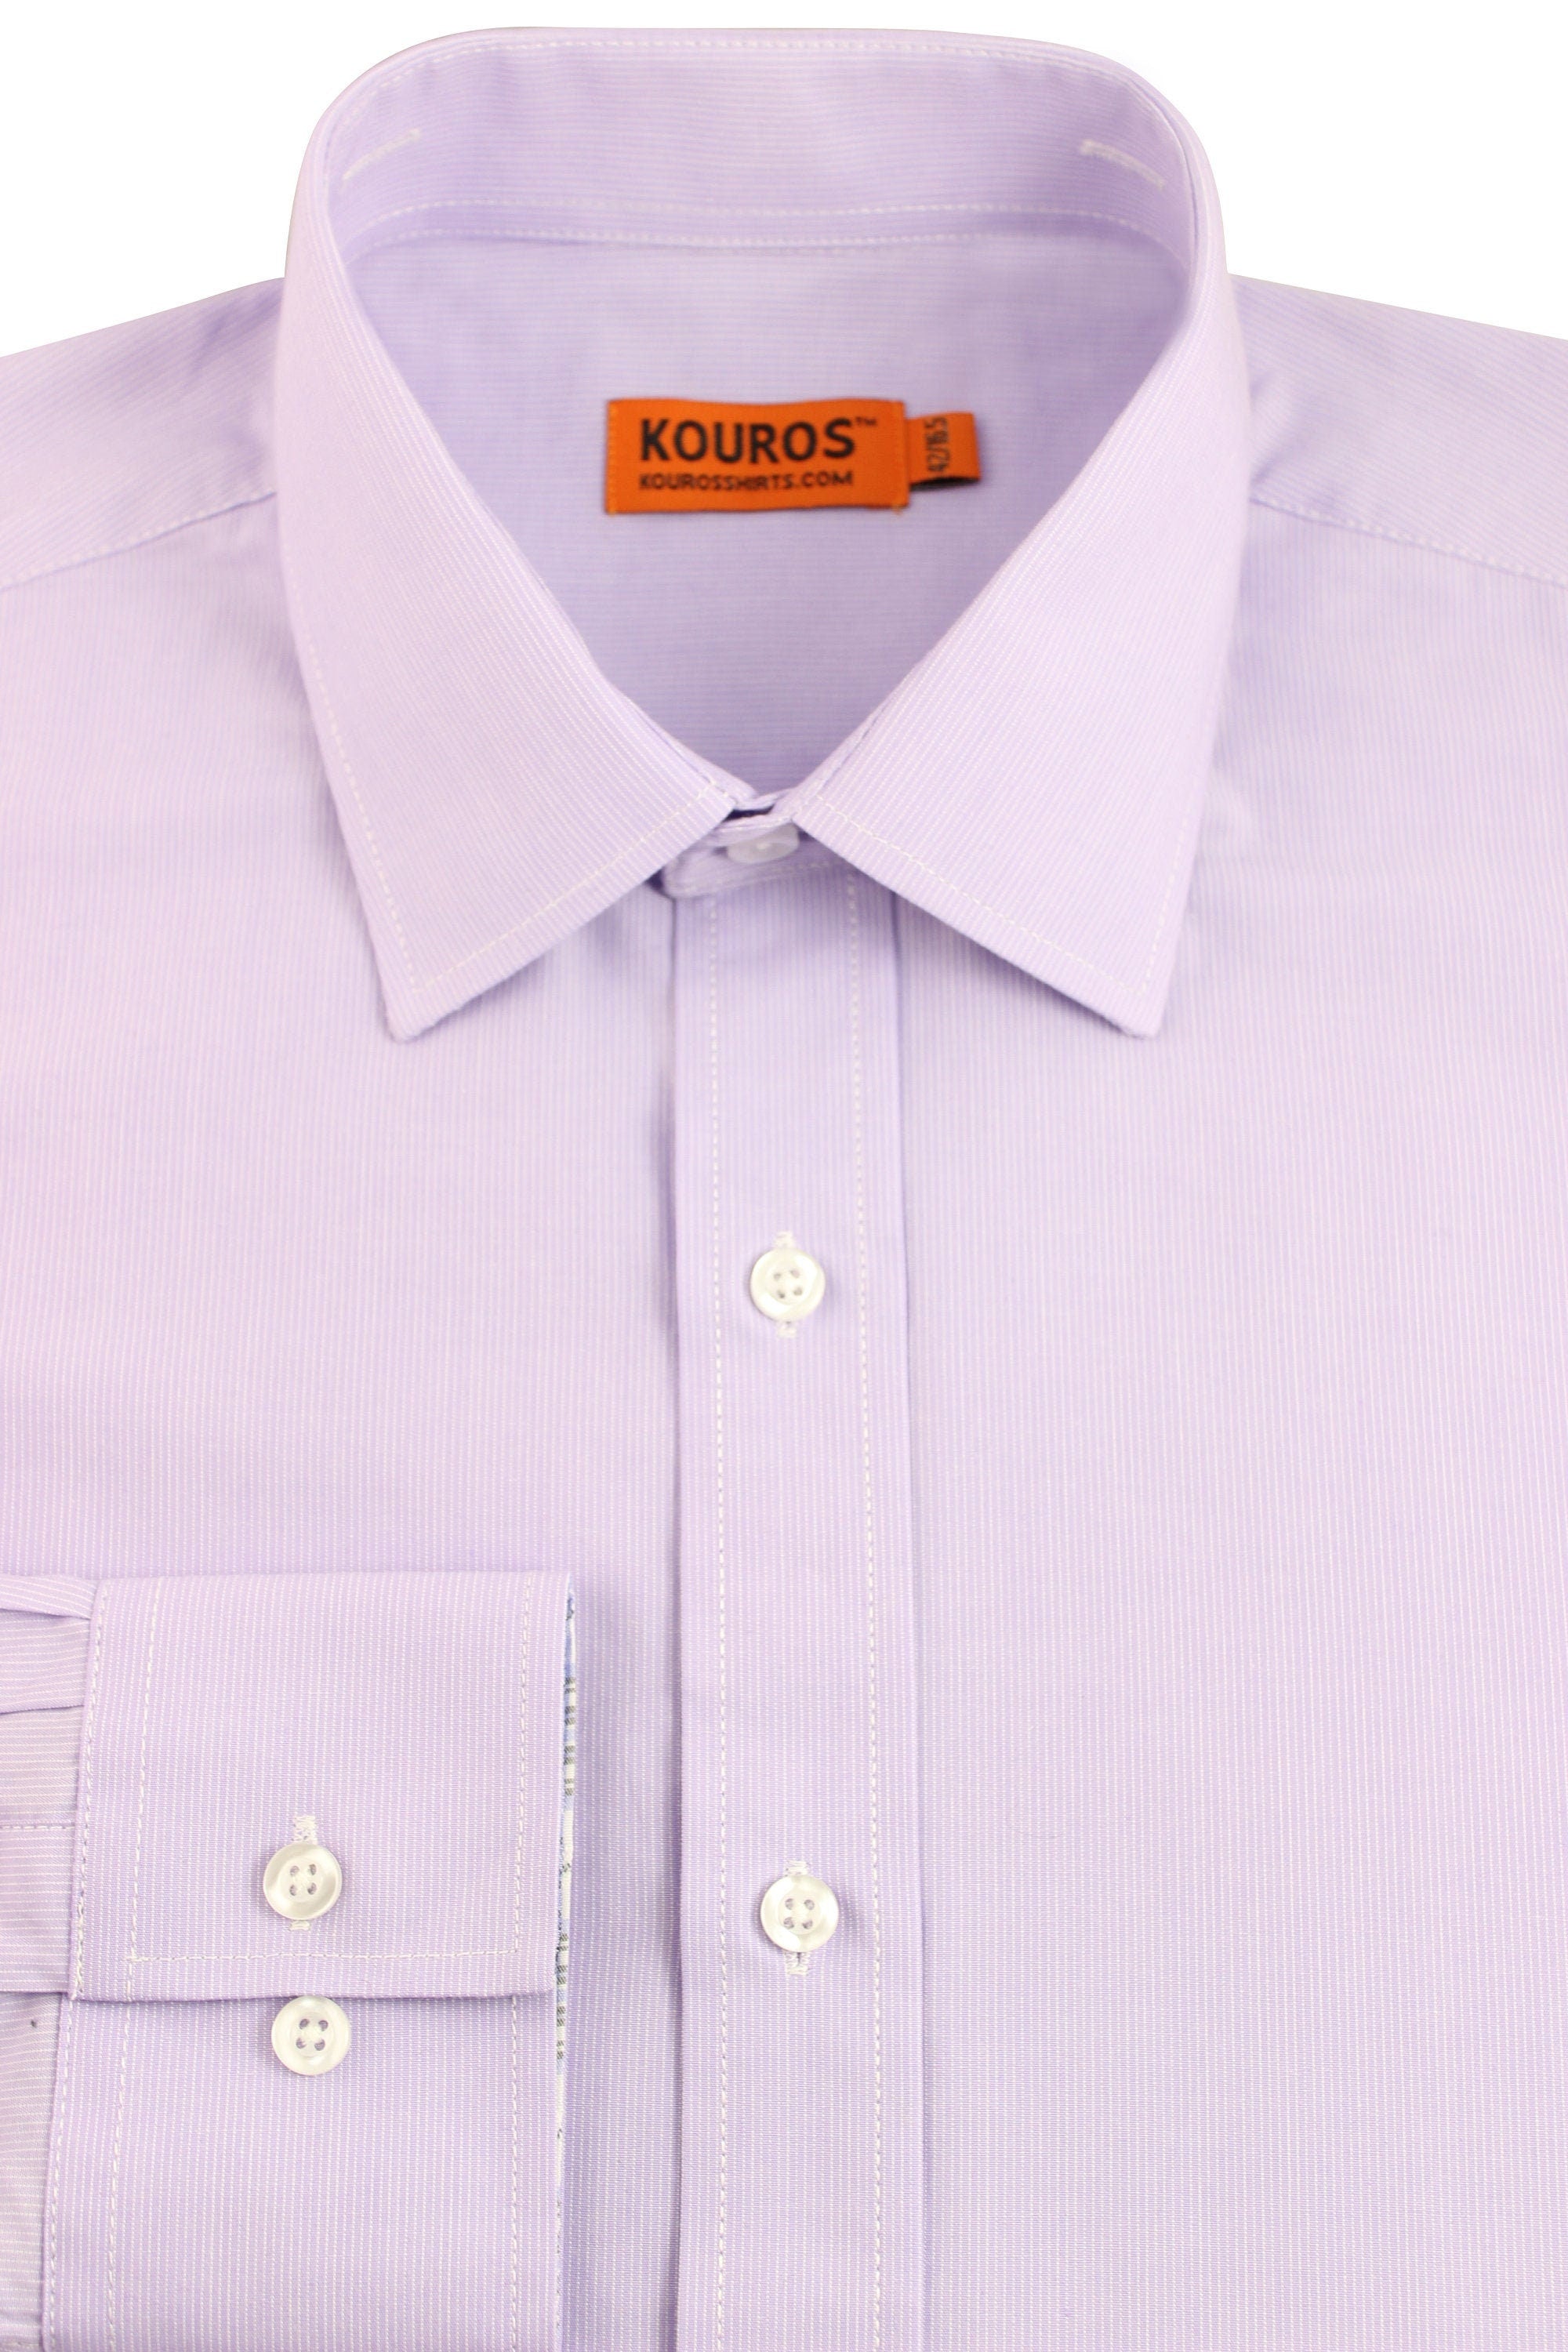 KOVROS Men's Premium Designer Dress Shirt, Lavendar | KOVROS